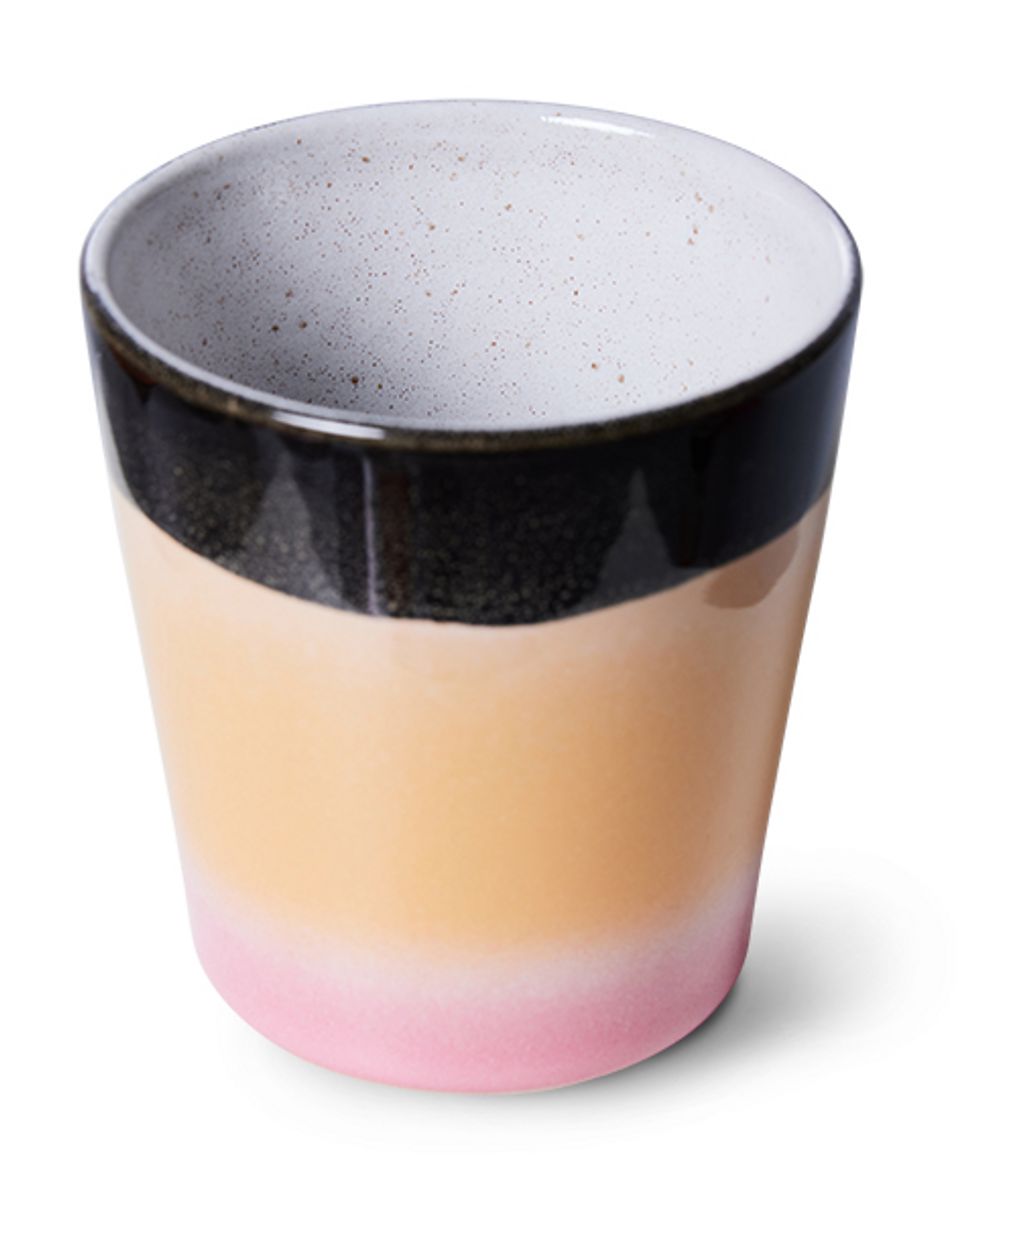 70s ceramics: coffee mug, Jiggy